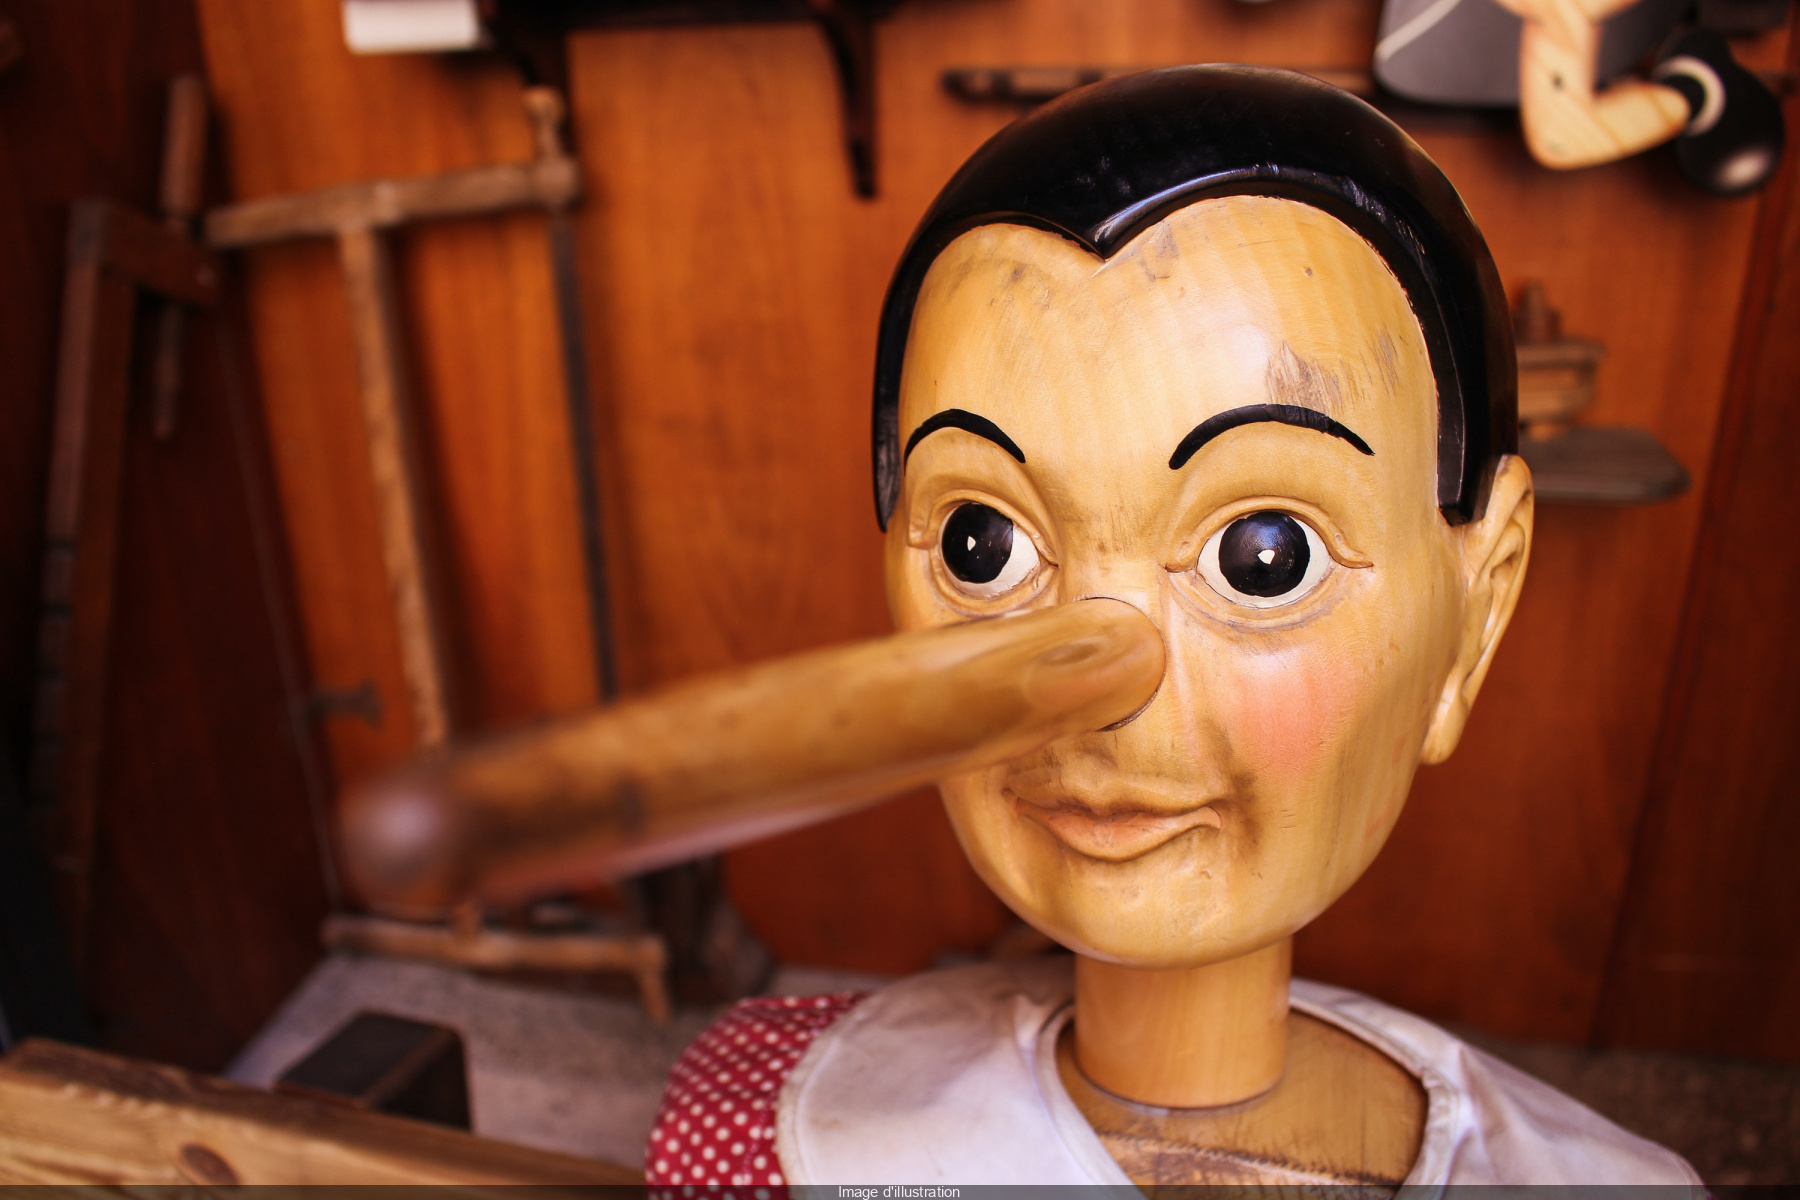 Thomas Bellorini revisits Pinocchio's enchanting tale at 104 